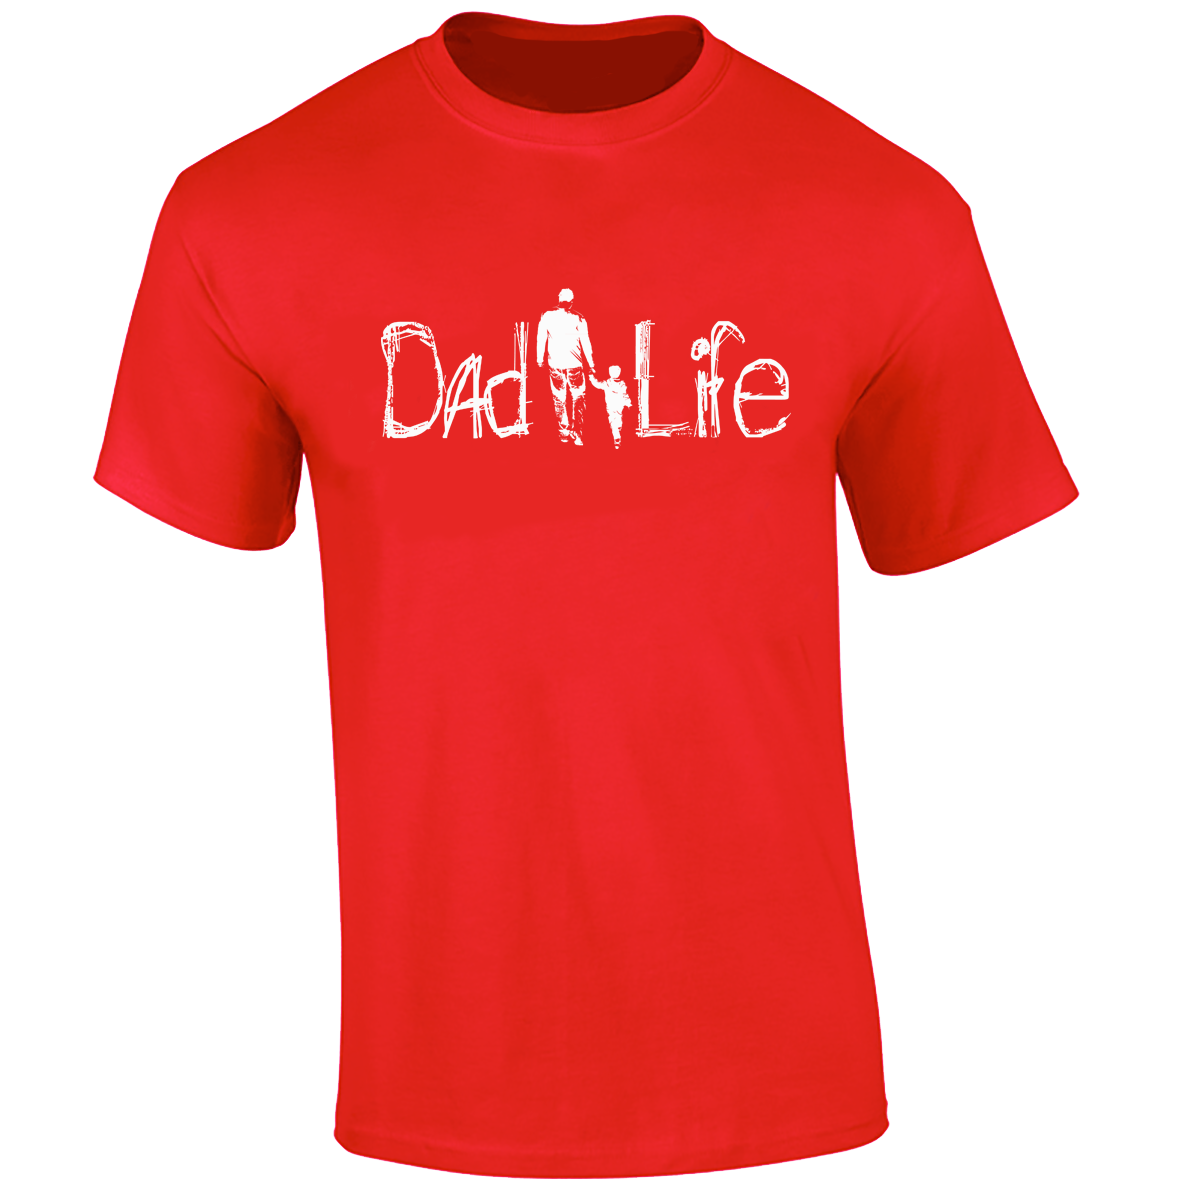 DadLife "The Walk"